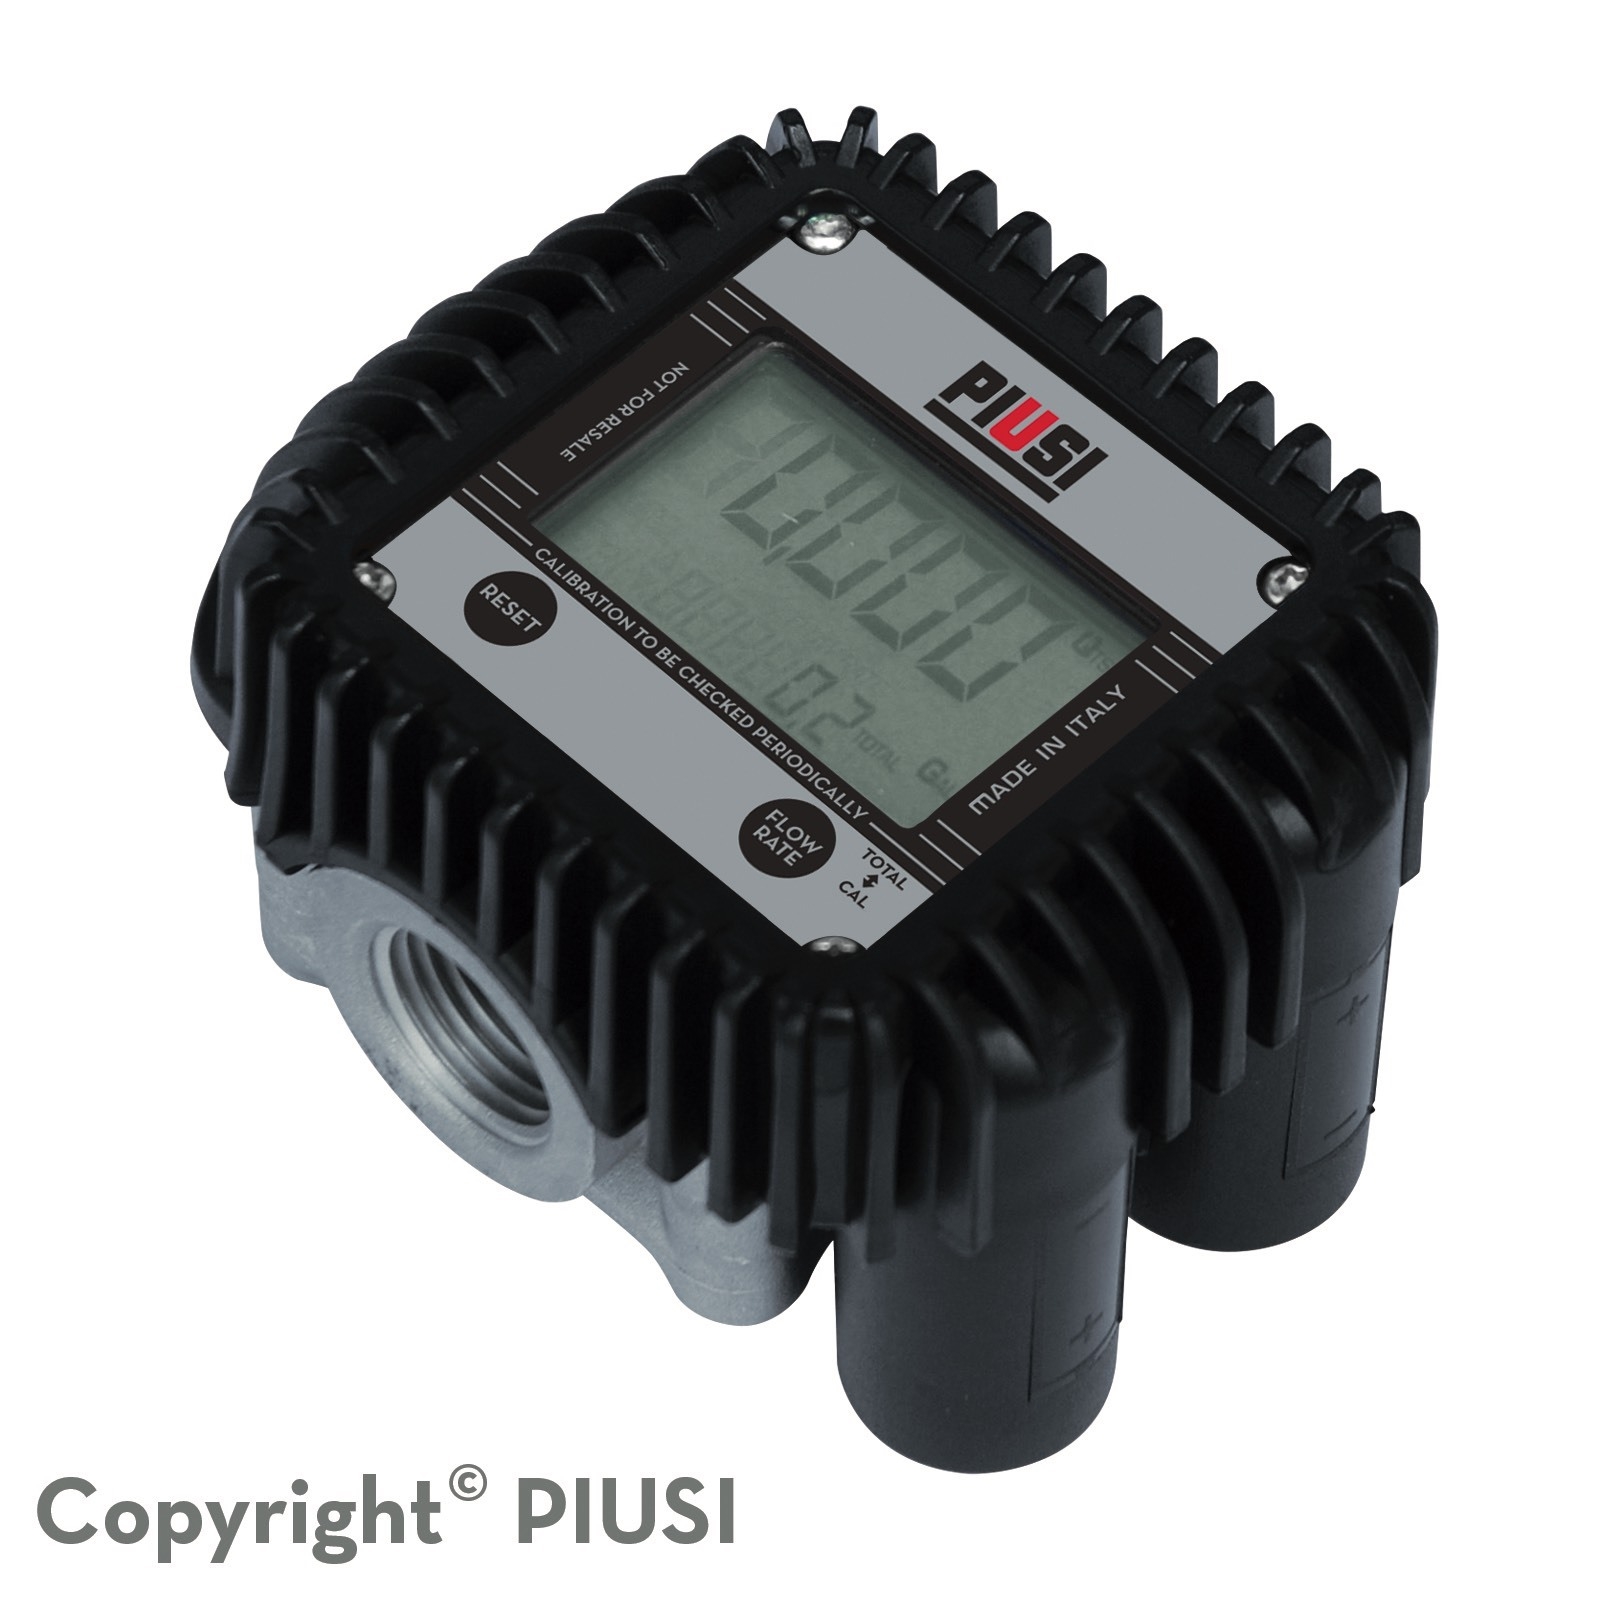 Đồng hồ đo lưu lượng dầu Piusi K400N